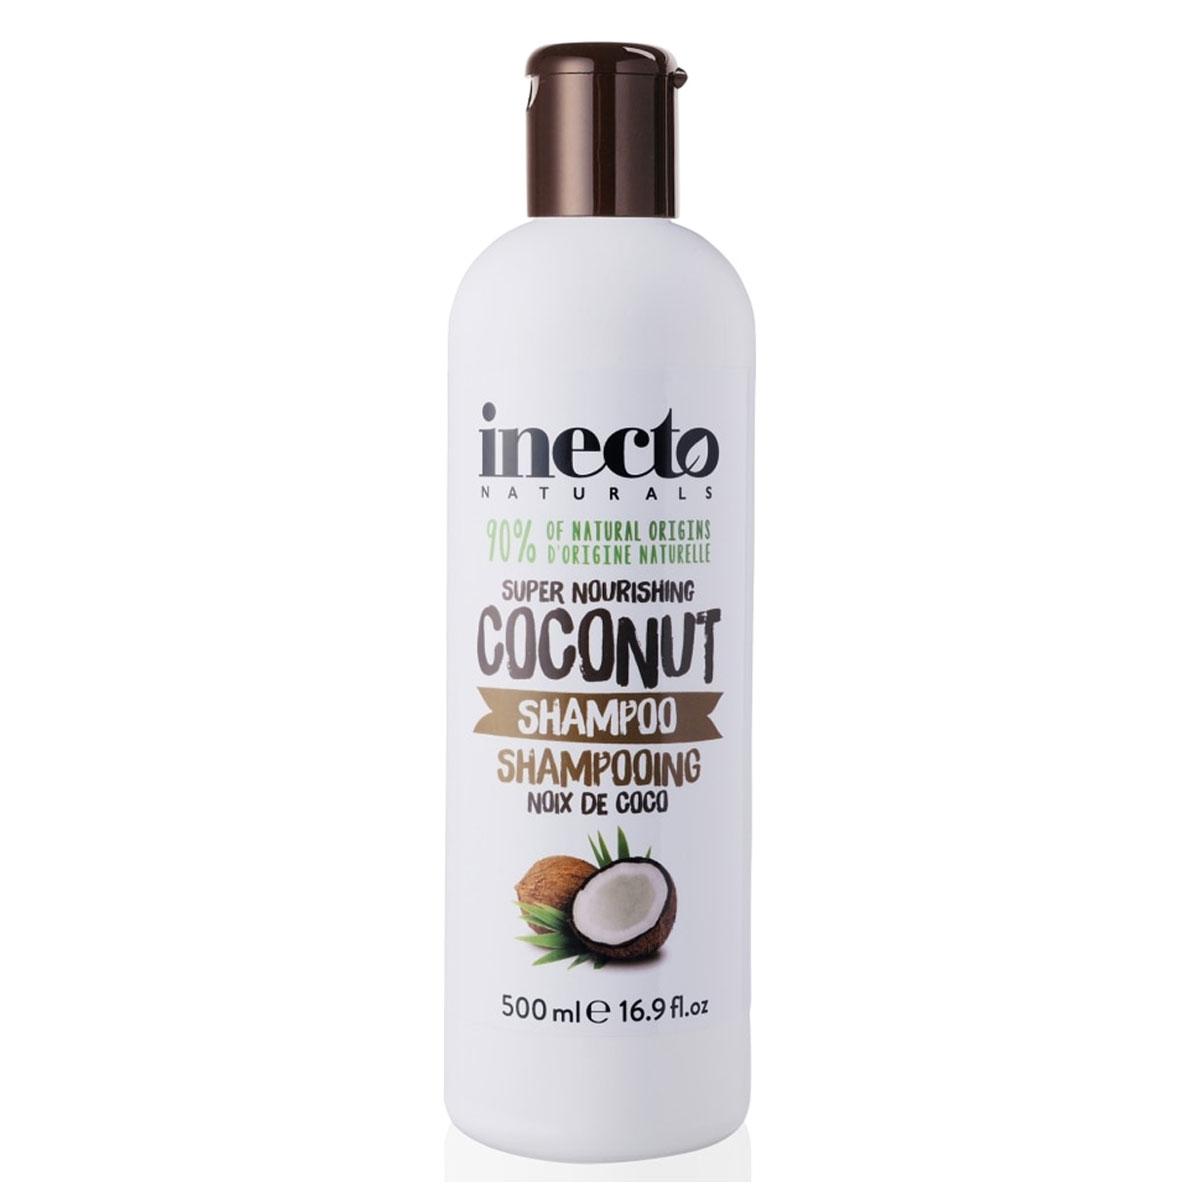 شامپوى تقویت کننده ى نارگیل  - super nourishing coconut shampoo 